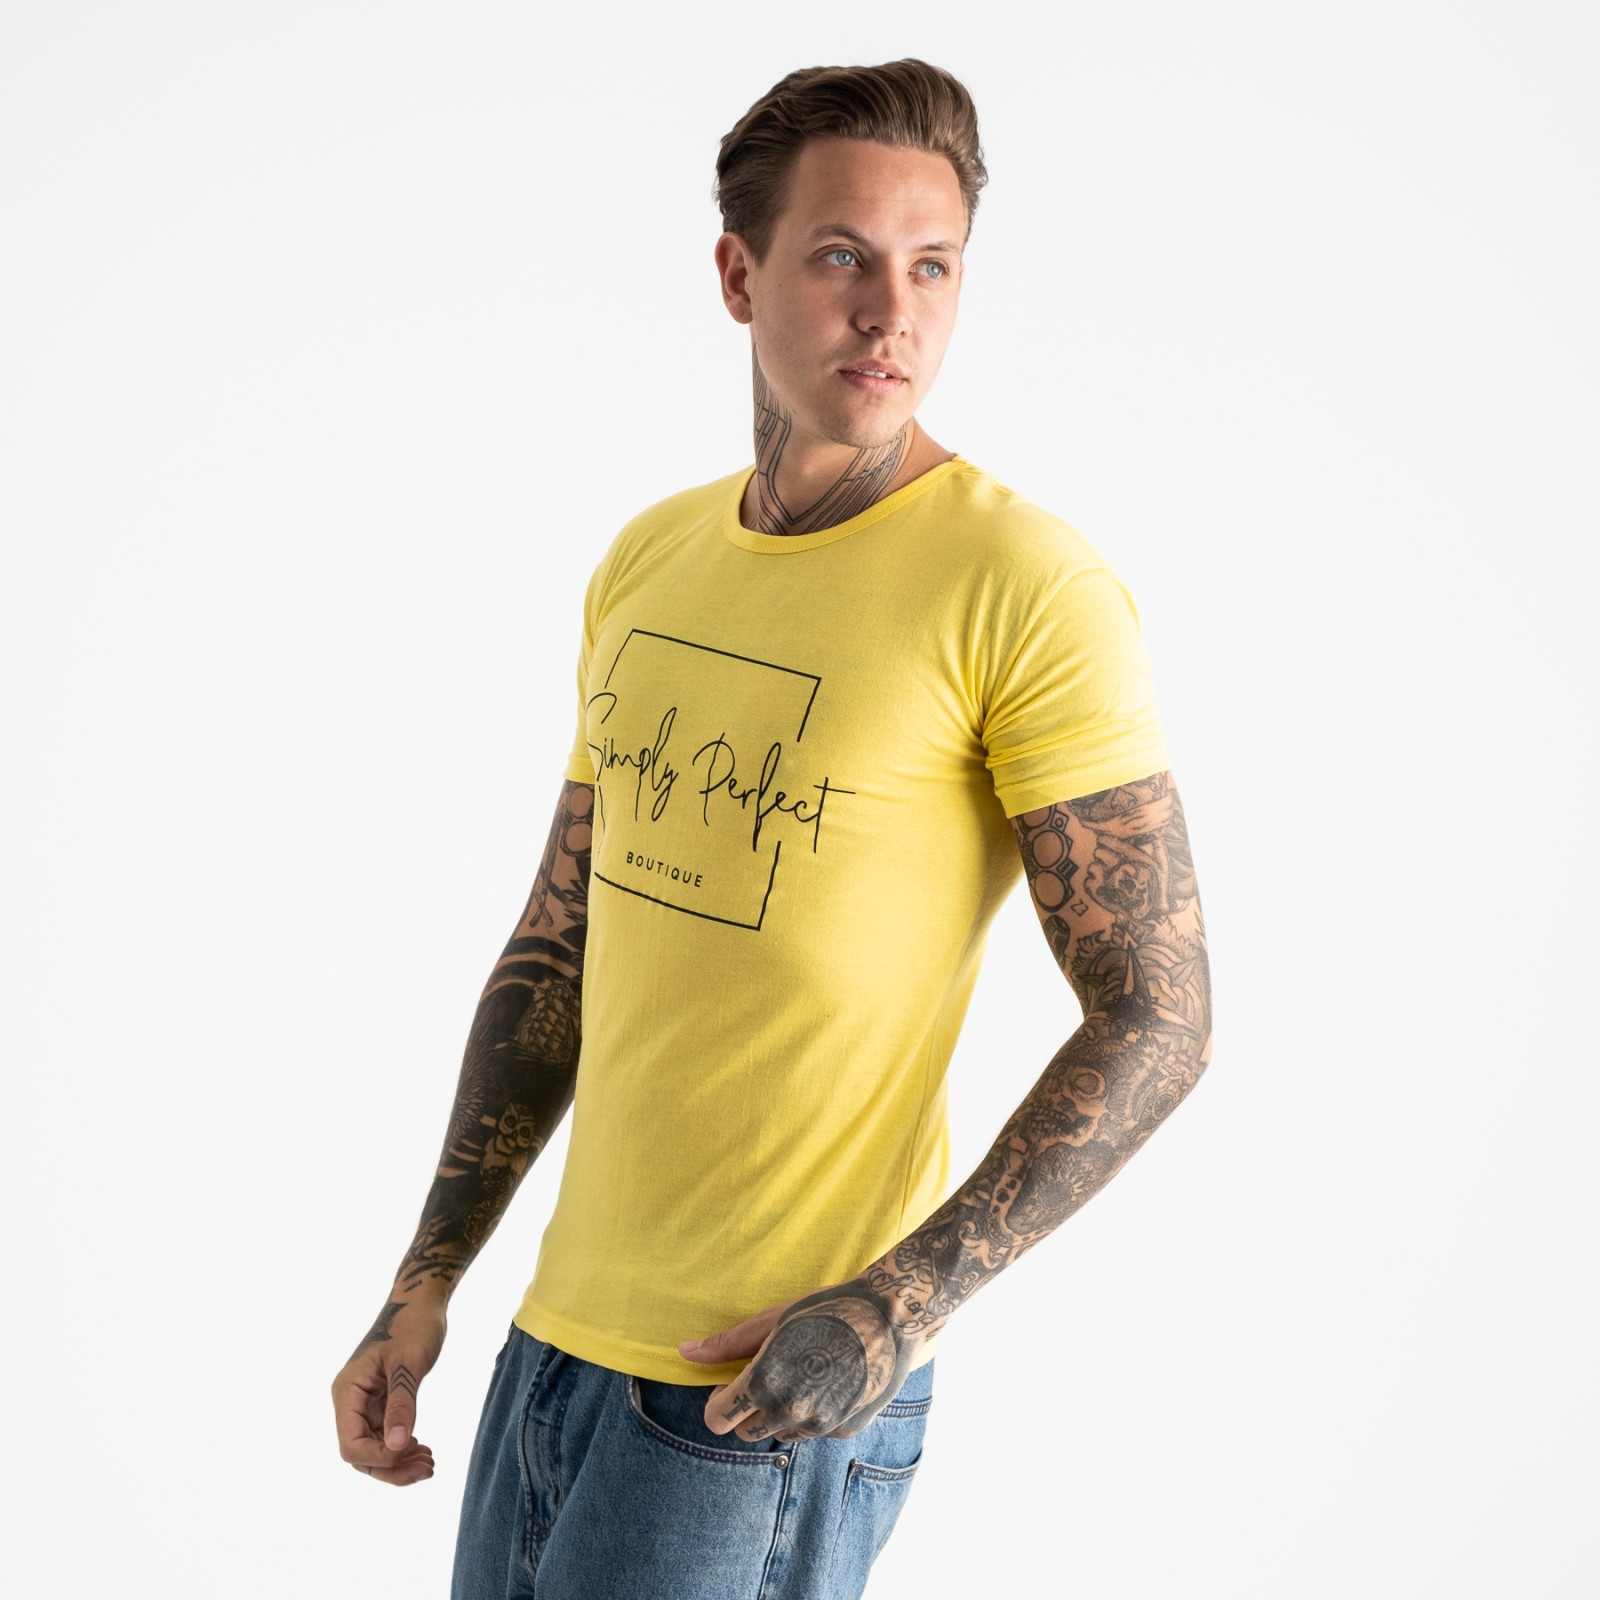 2603-6 желтая футболка мужская с принтом (4 ед. размеры: M.L.XL.2XL)